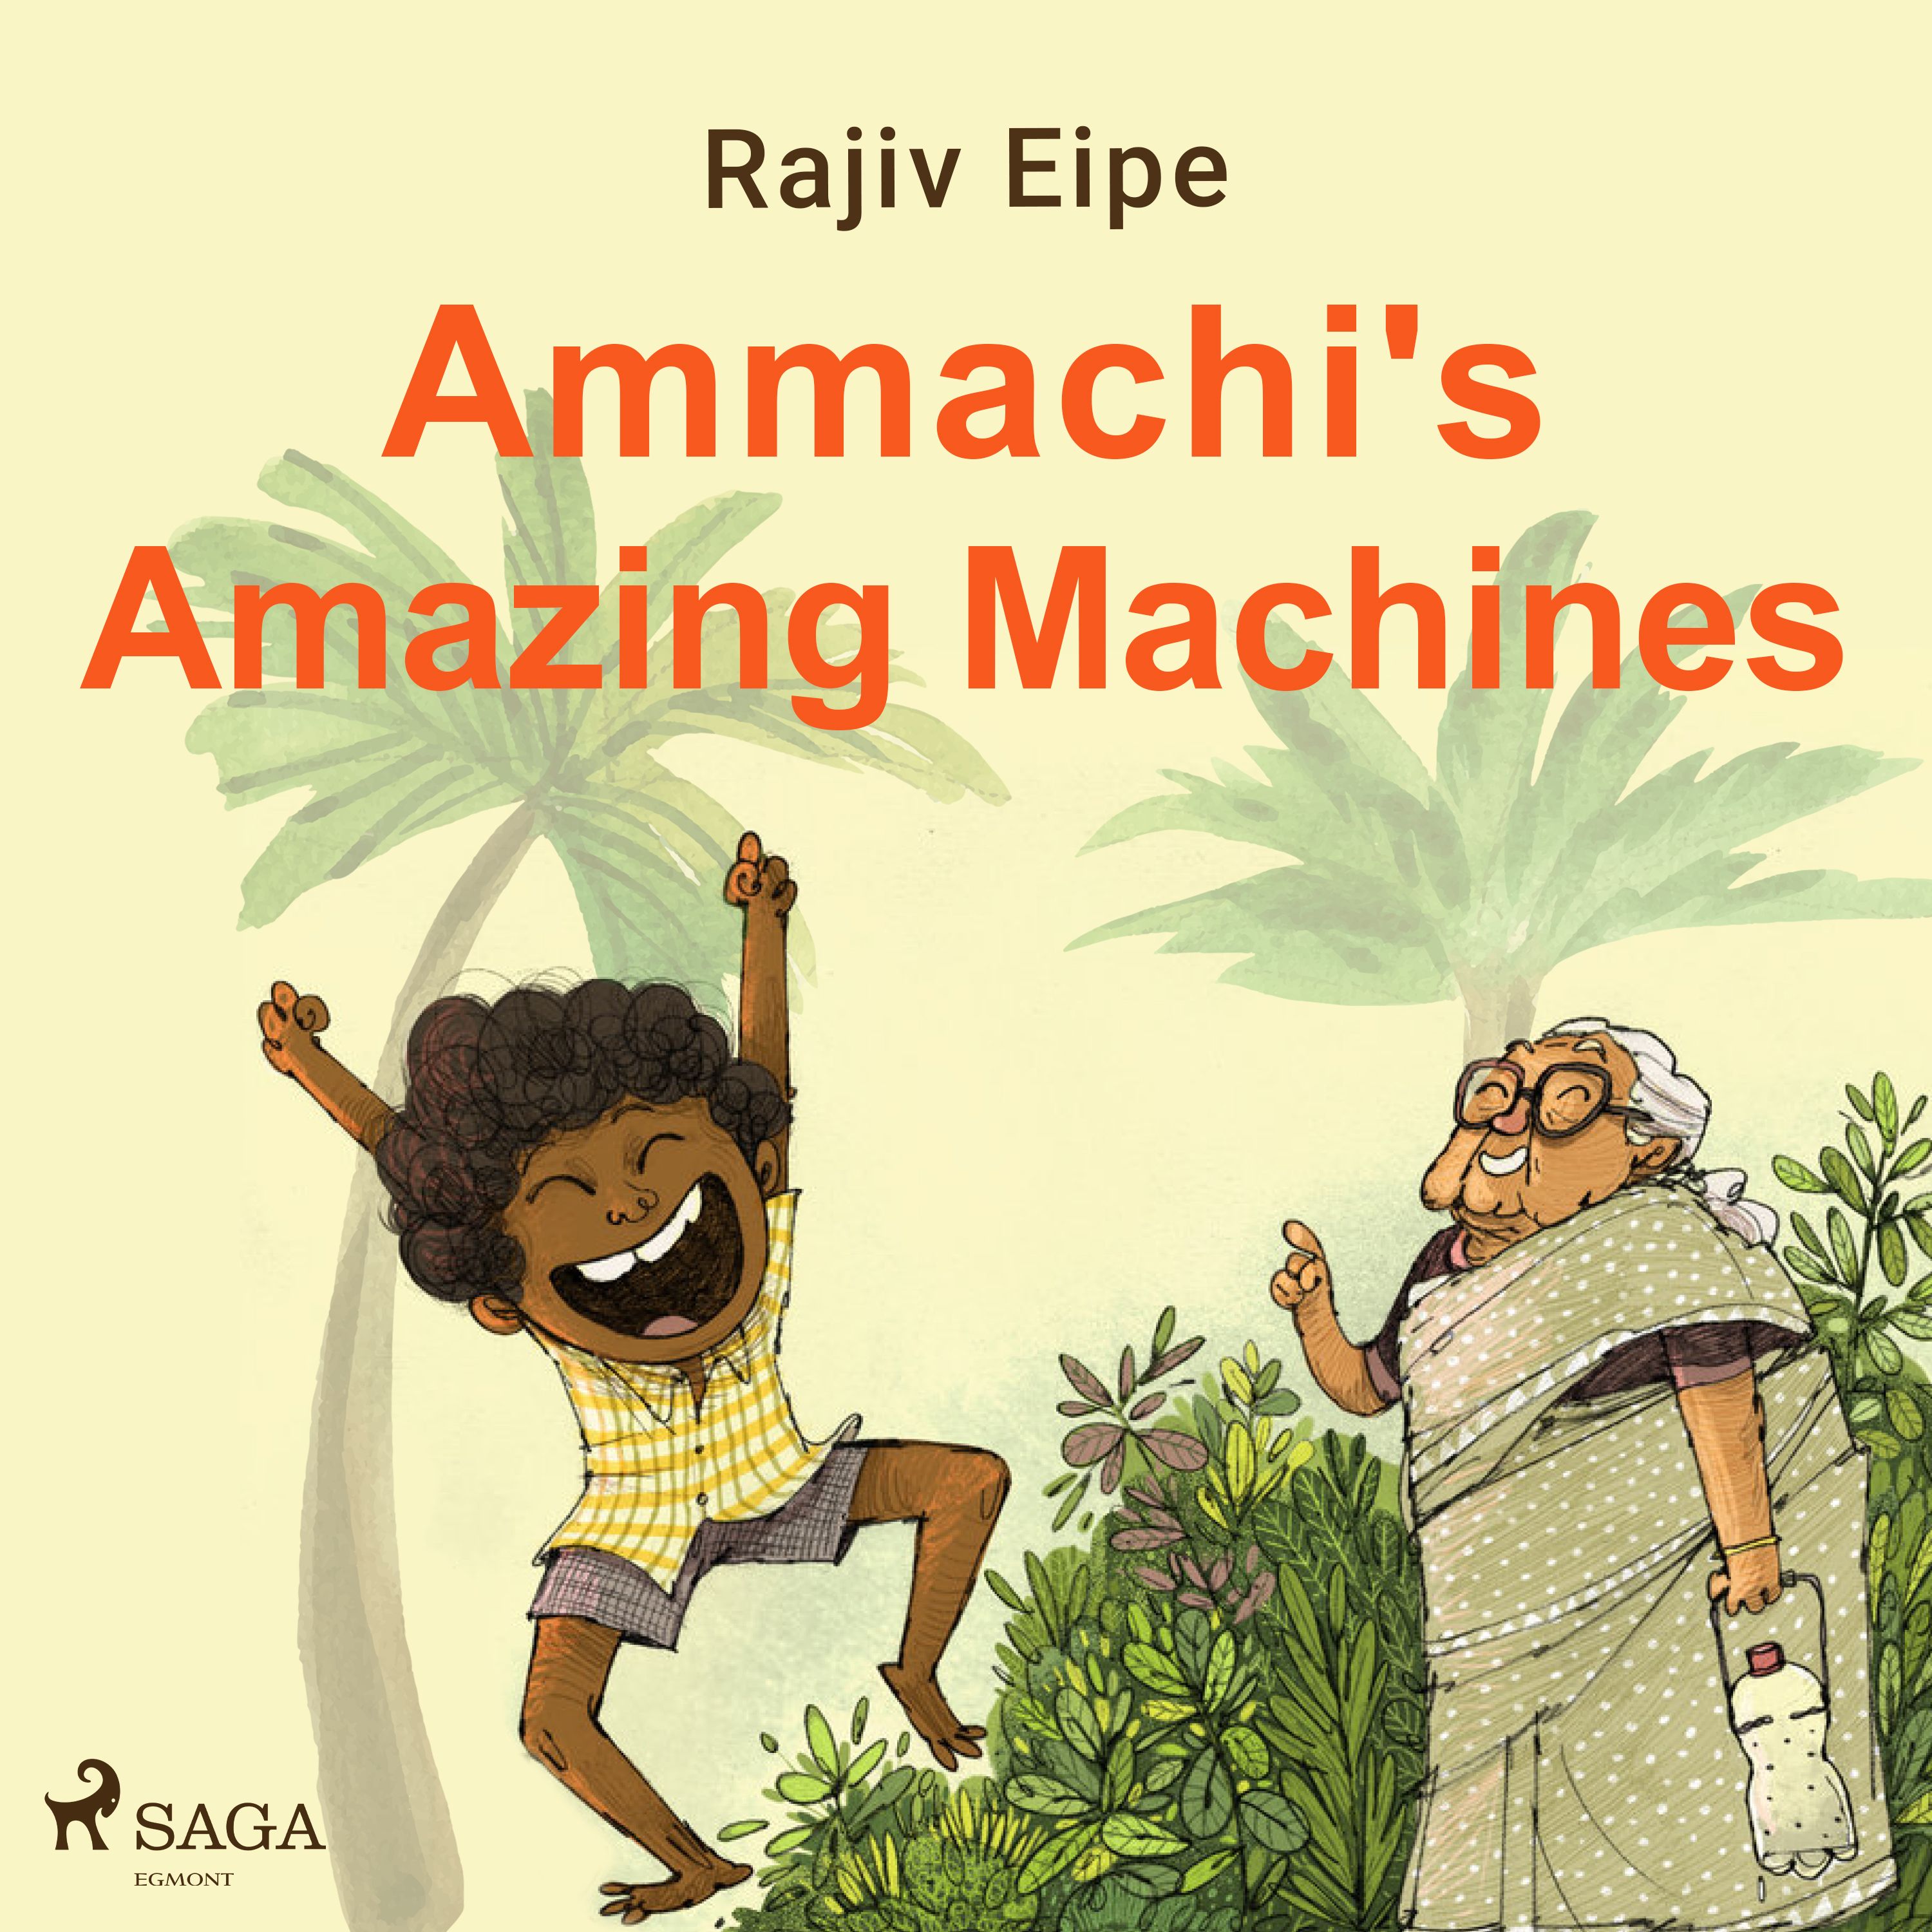 Ammachi's Amazing Machines, lydbog af Rajiv Eipe